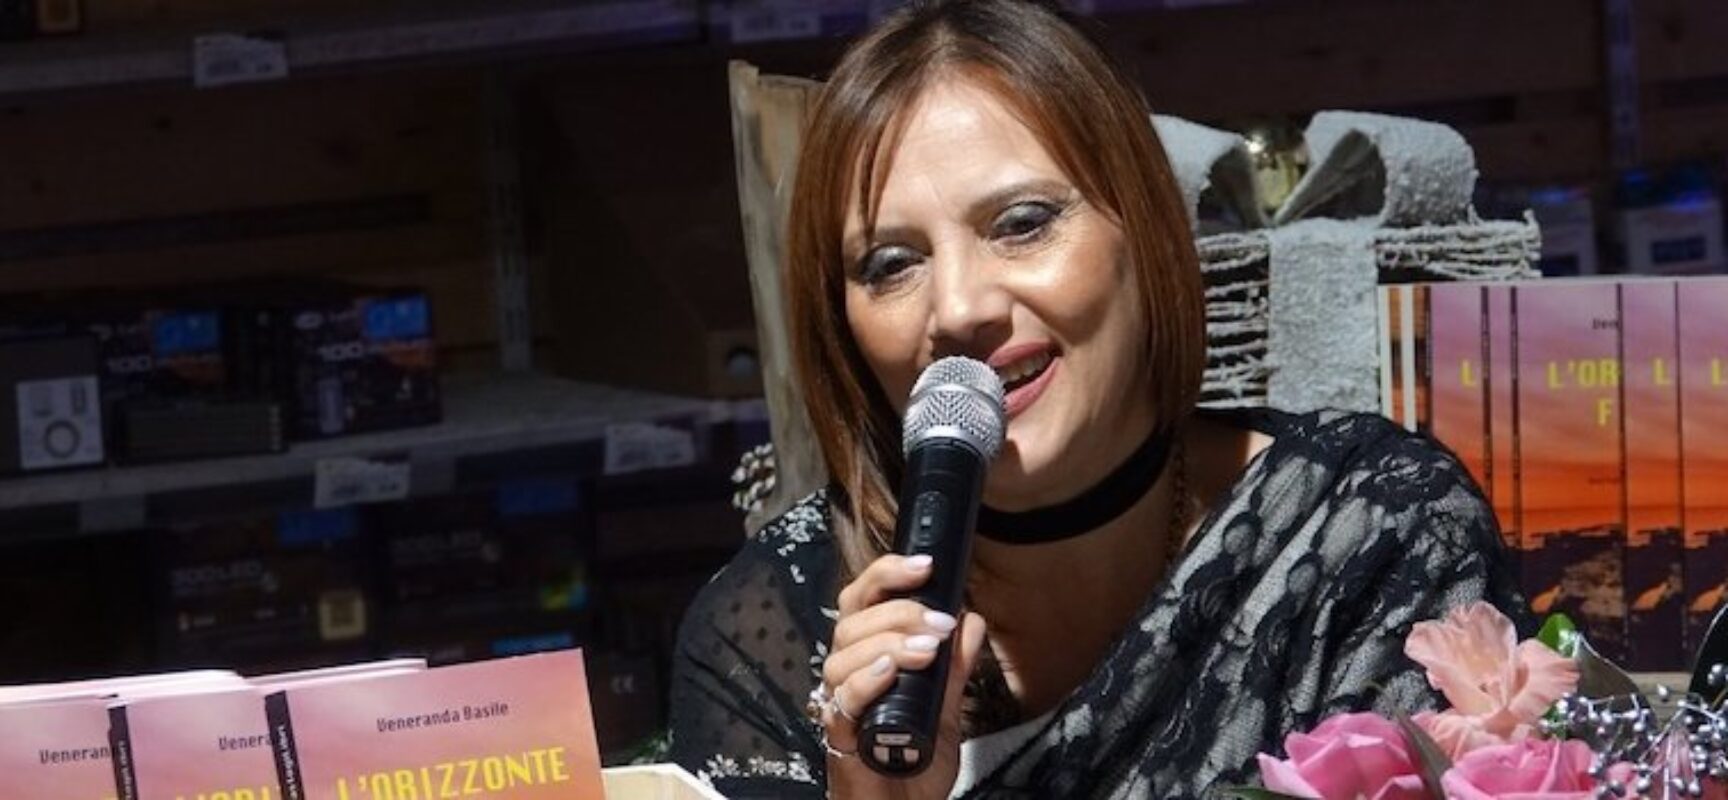 Veneranda Basile presenta il suo romanzo alle Vecchie Segherie Mastrototaro